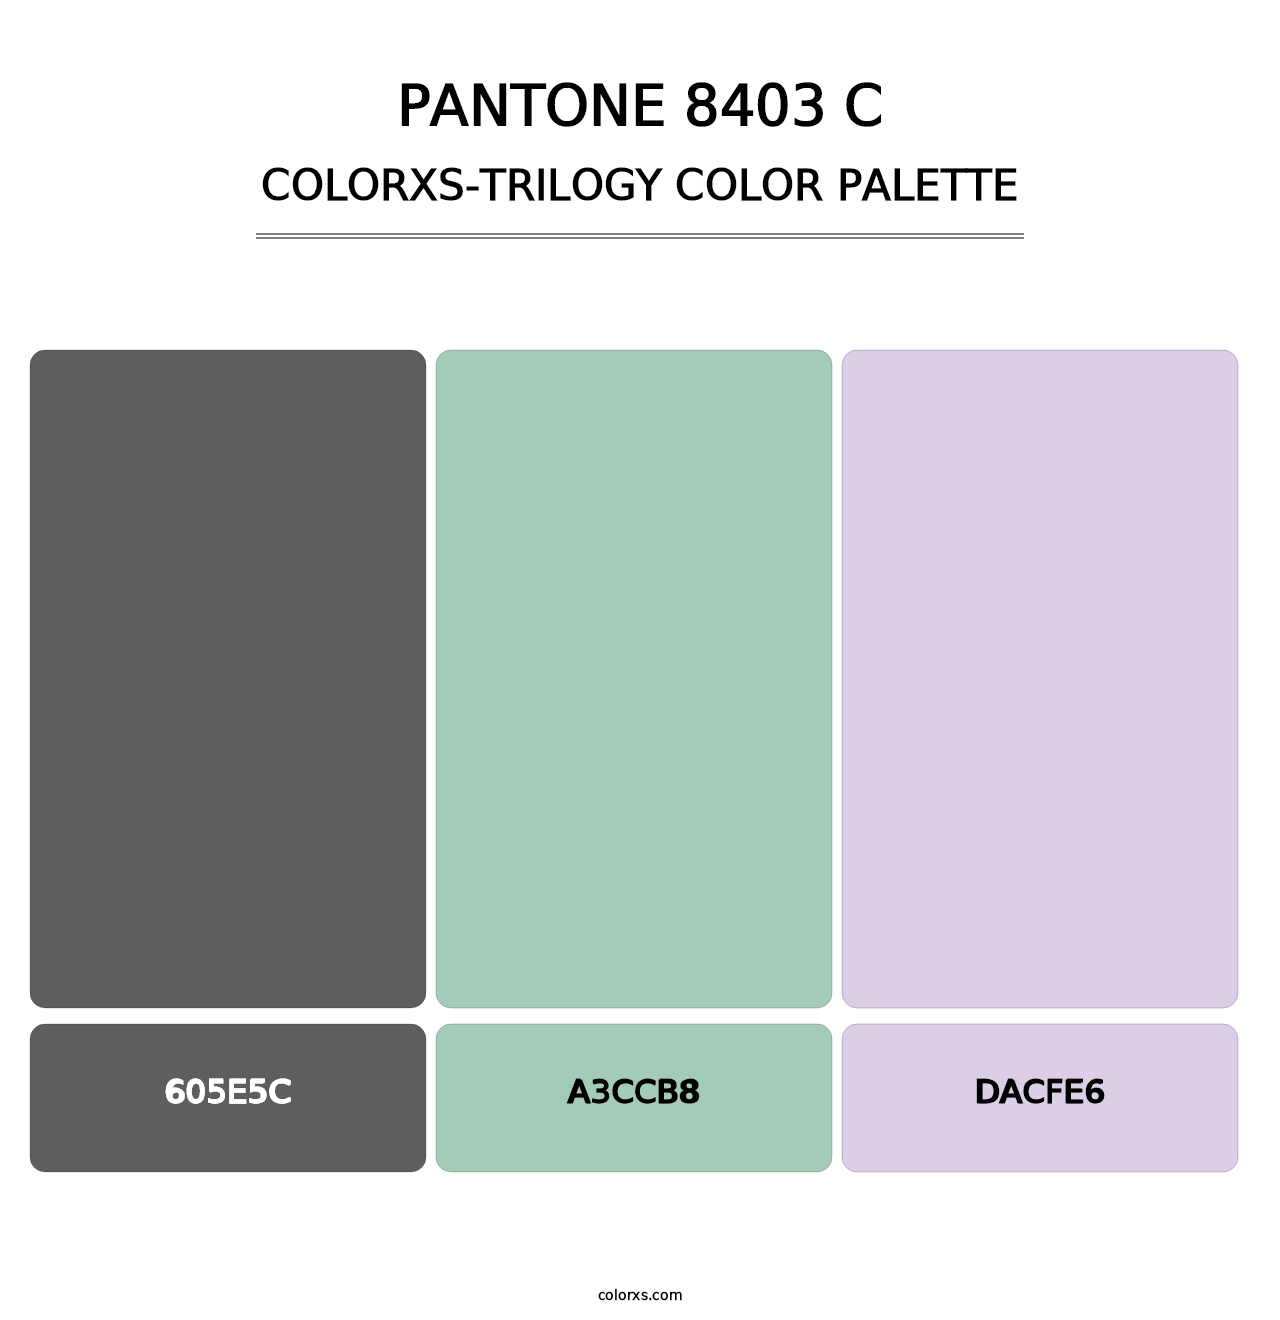 PANTONE 8403 C - Colorxs Trilogy Palette